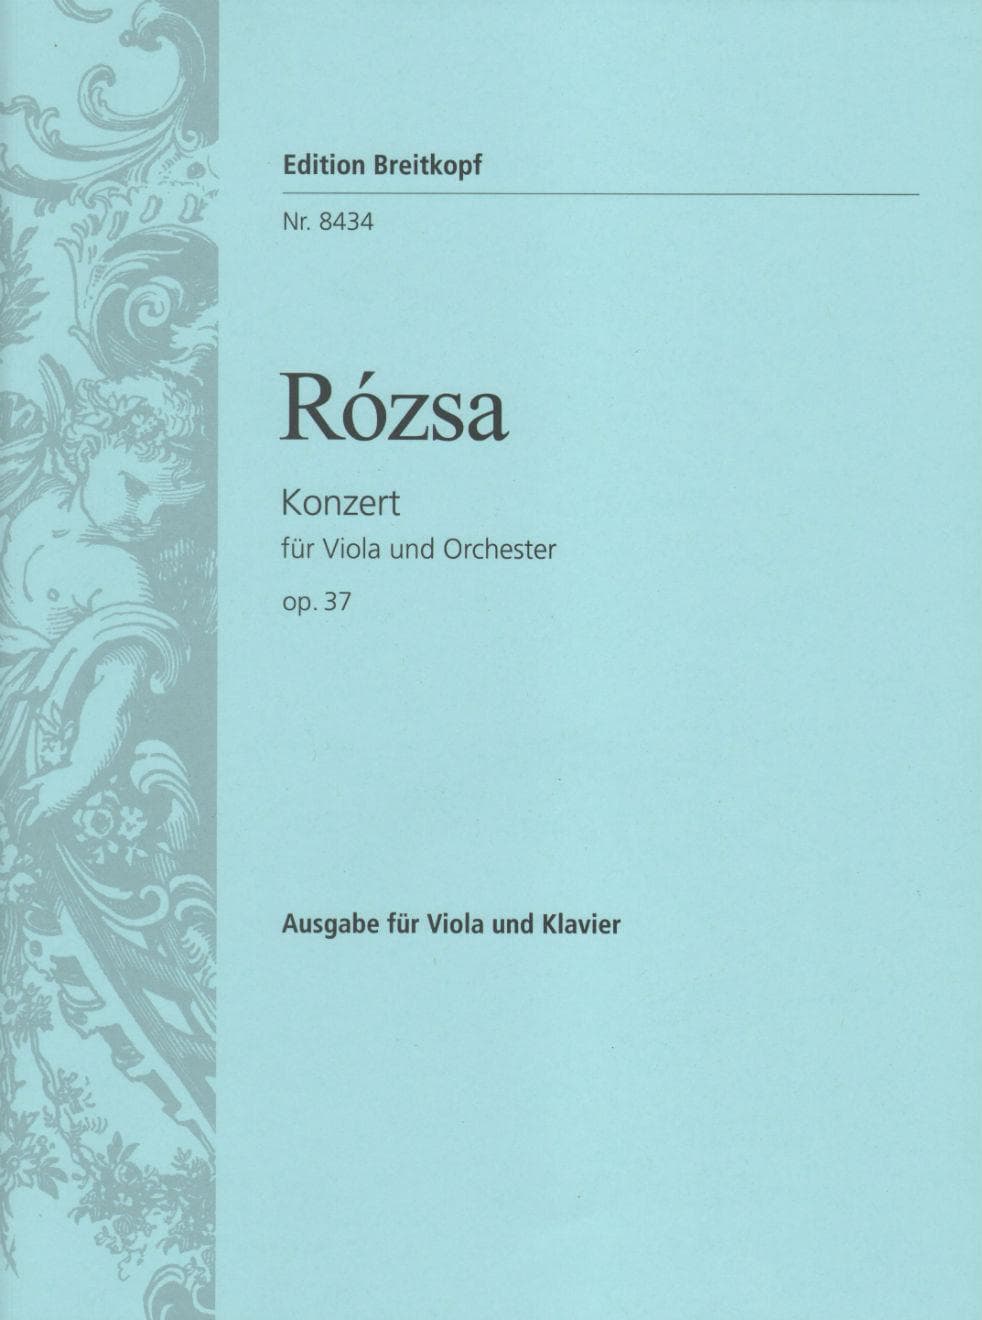 Miklos Rozsa - Viola Concerto Op. 37 -  Viola and Piano Reduction - Edition Breitkopf